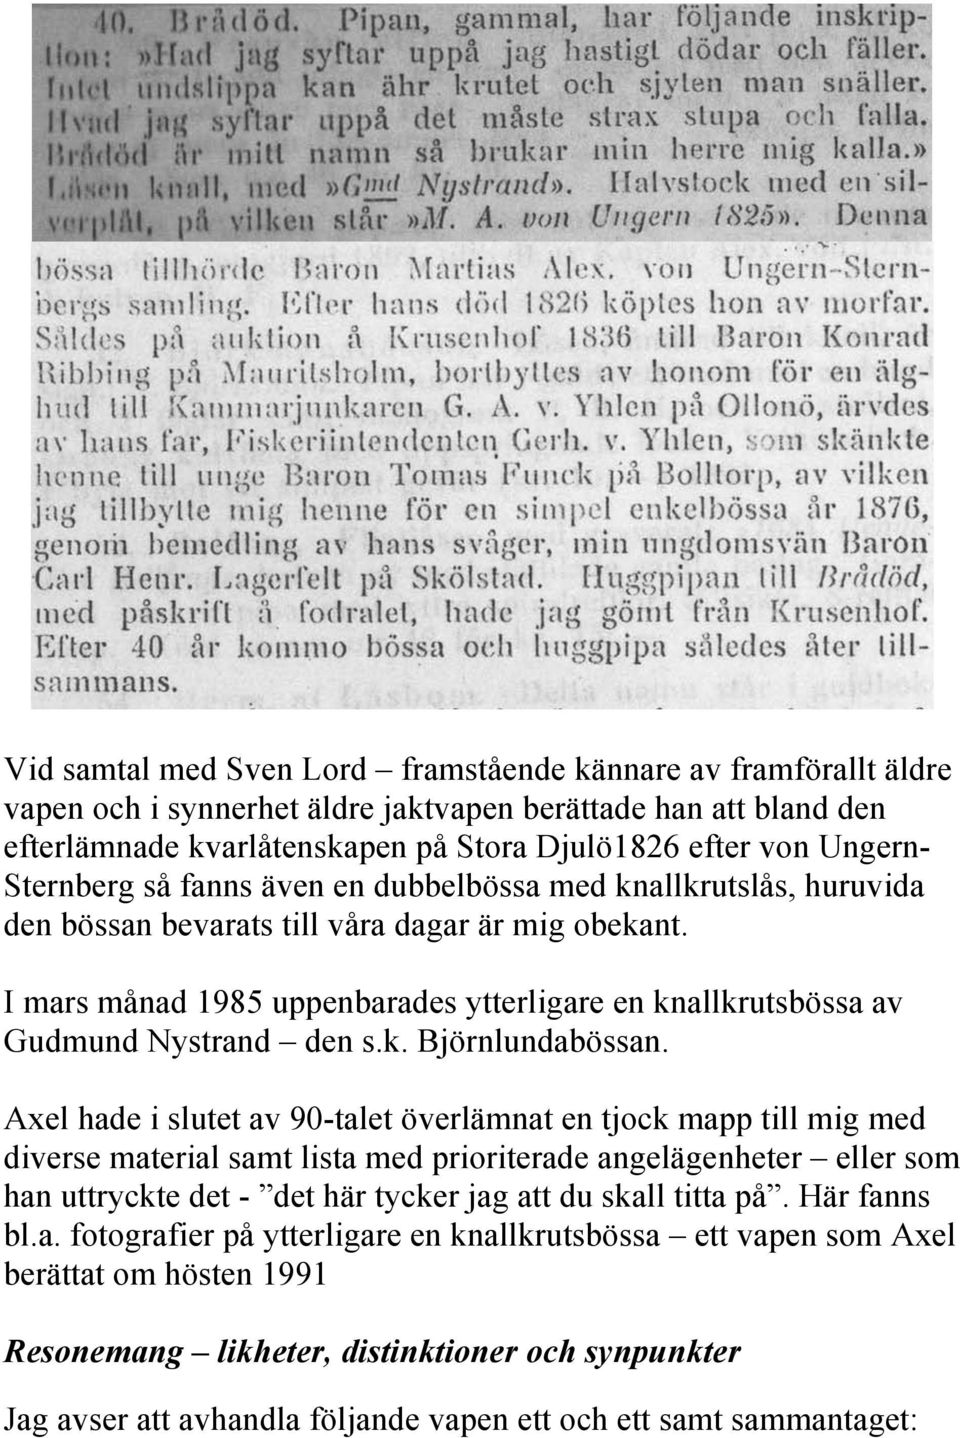 I mars månad 1985 uppenbarades ytterligare en knallkrutsbössa av Gudmund Nystrand den s.k. Björnlundabössan.